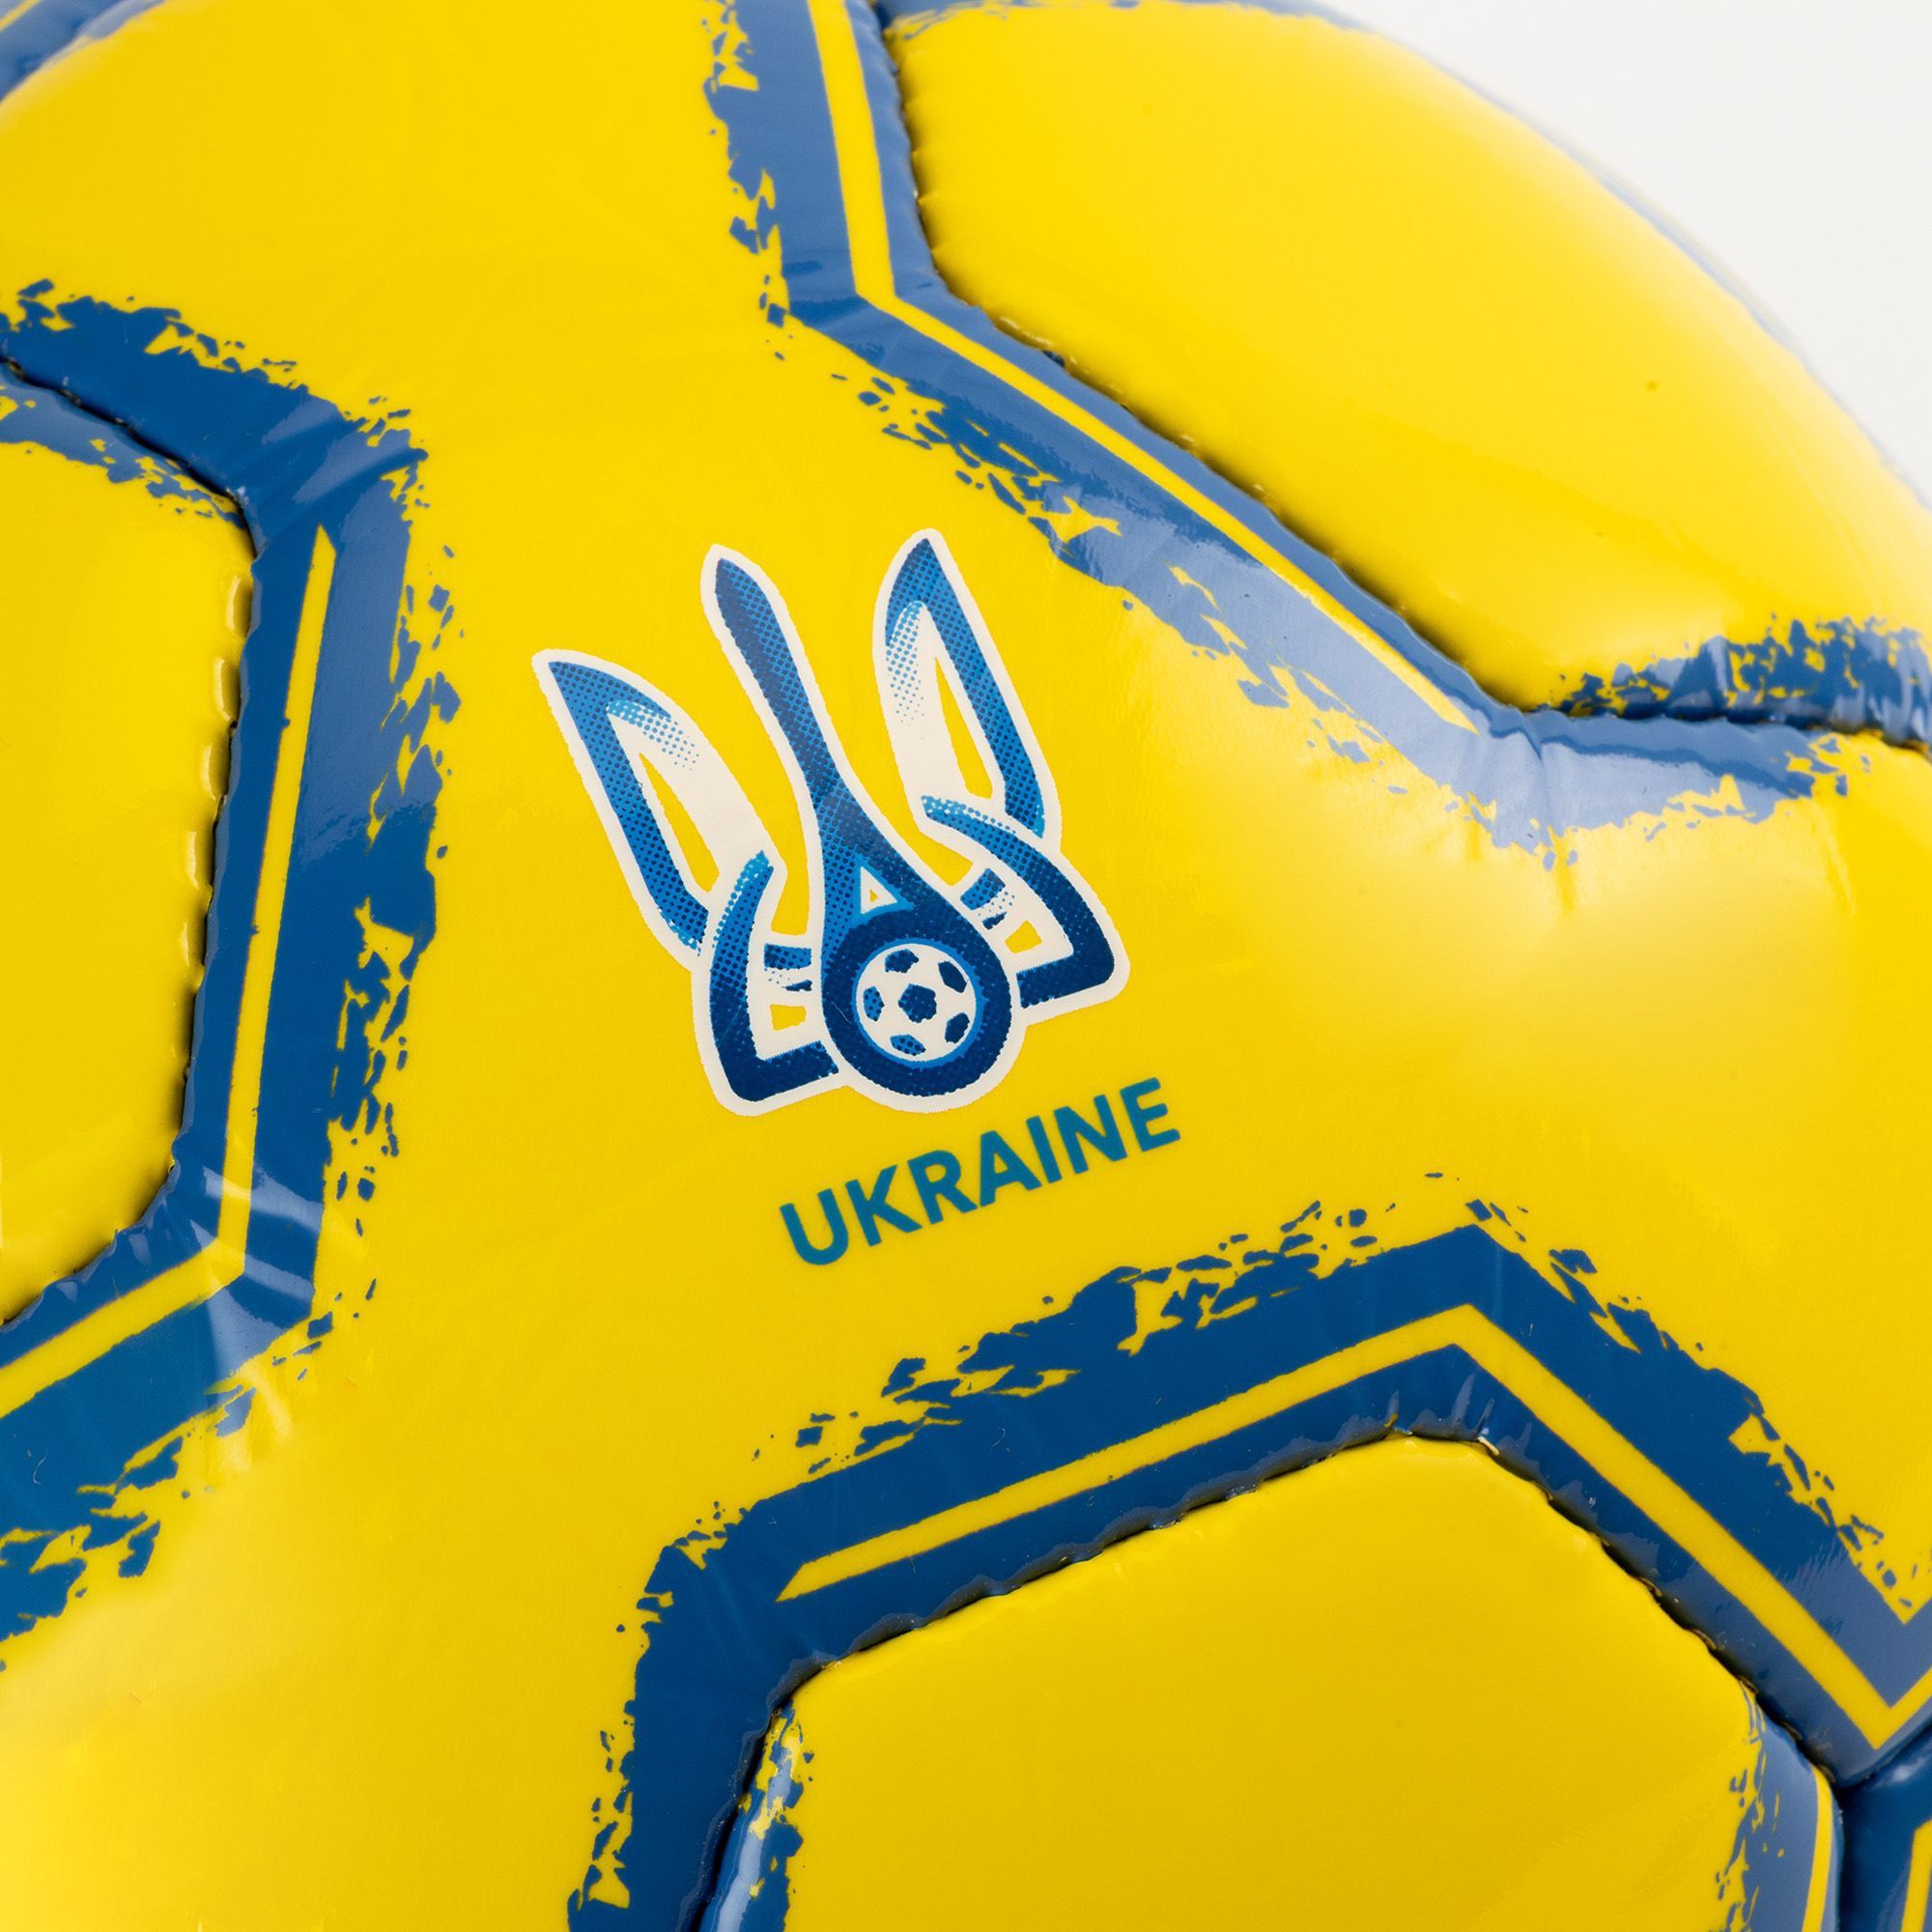 М'яч Joma орігінал збірної України з футболу.